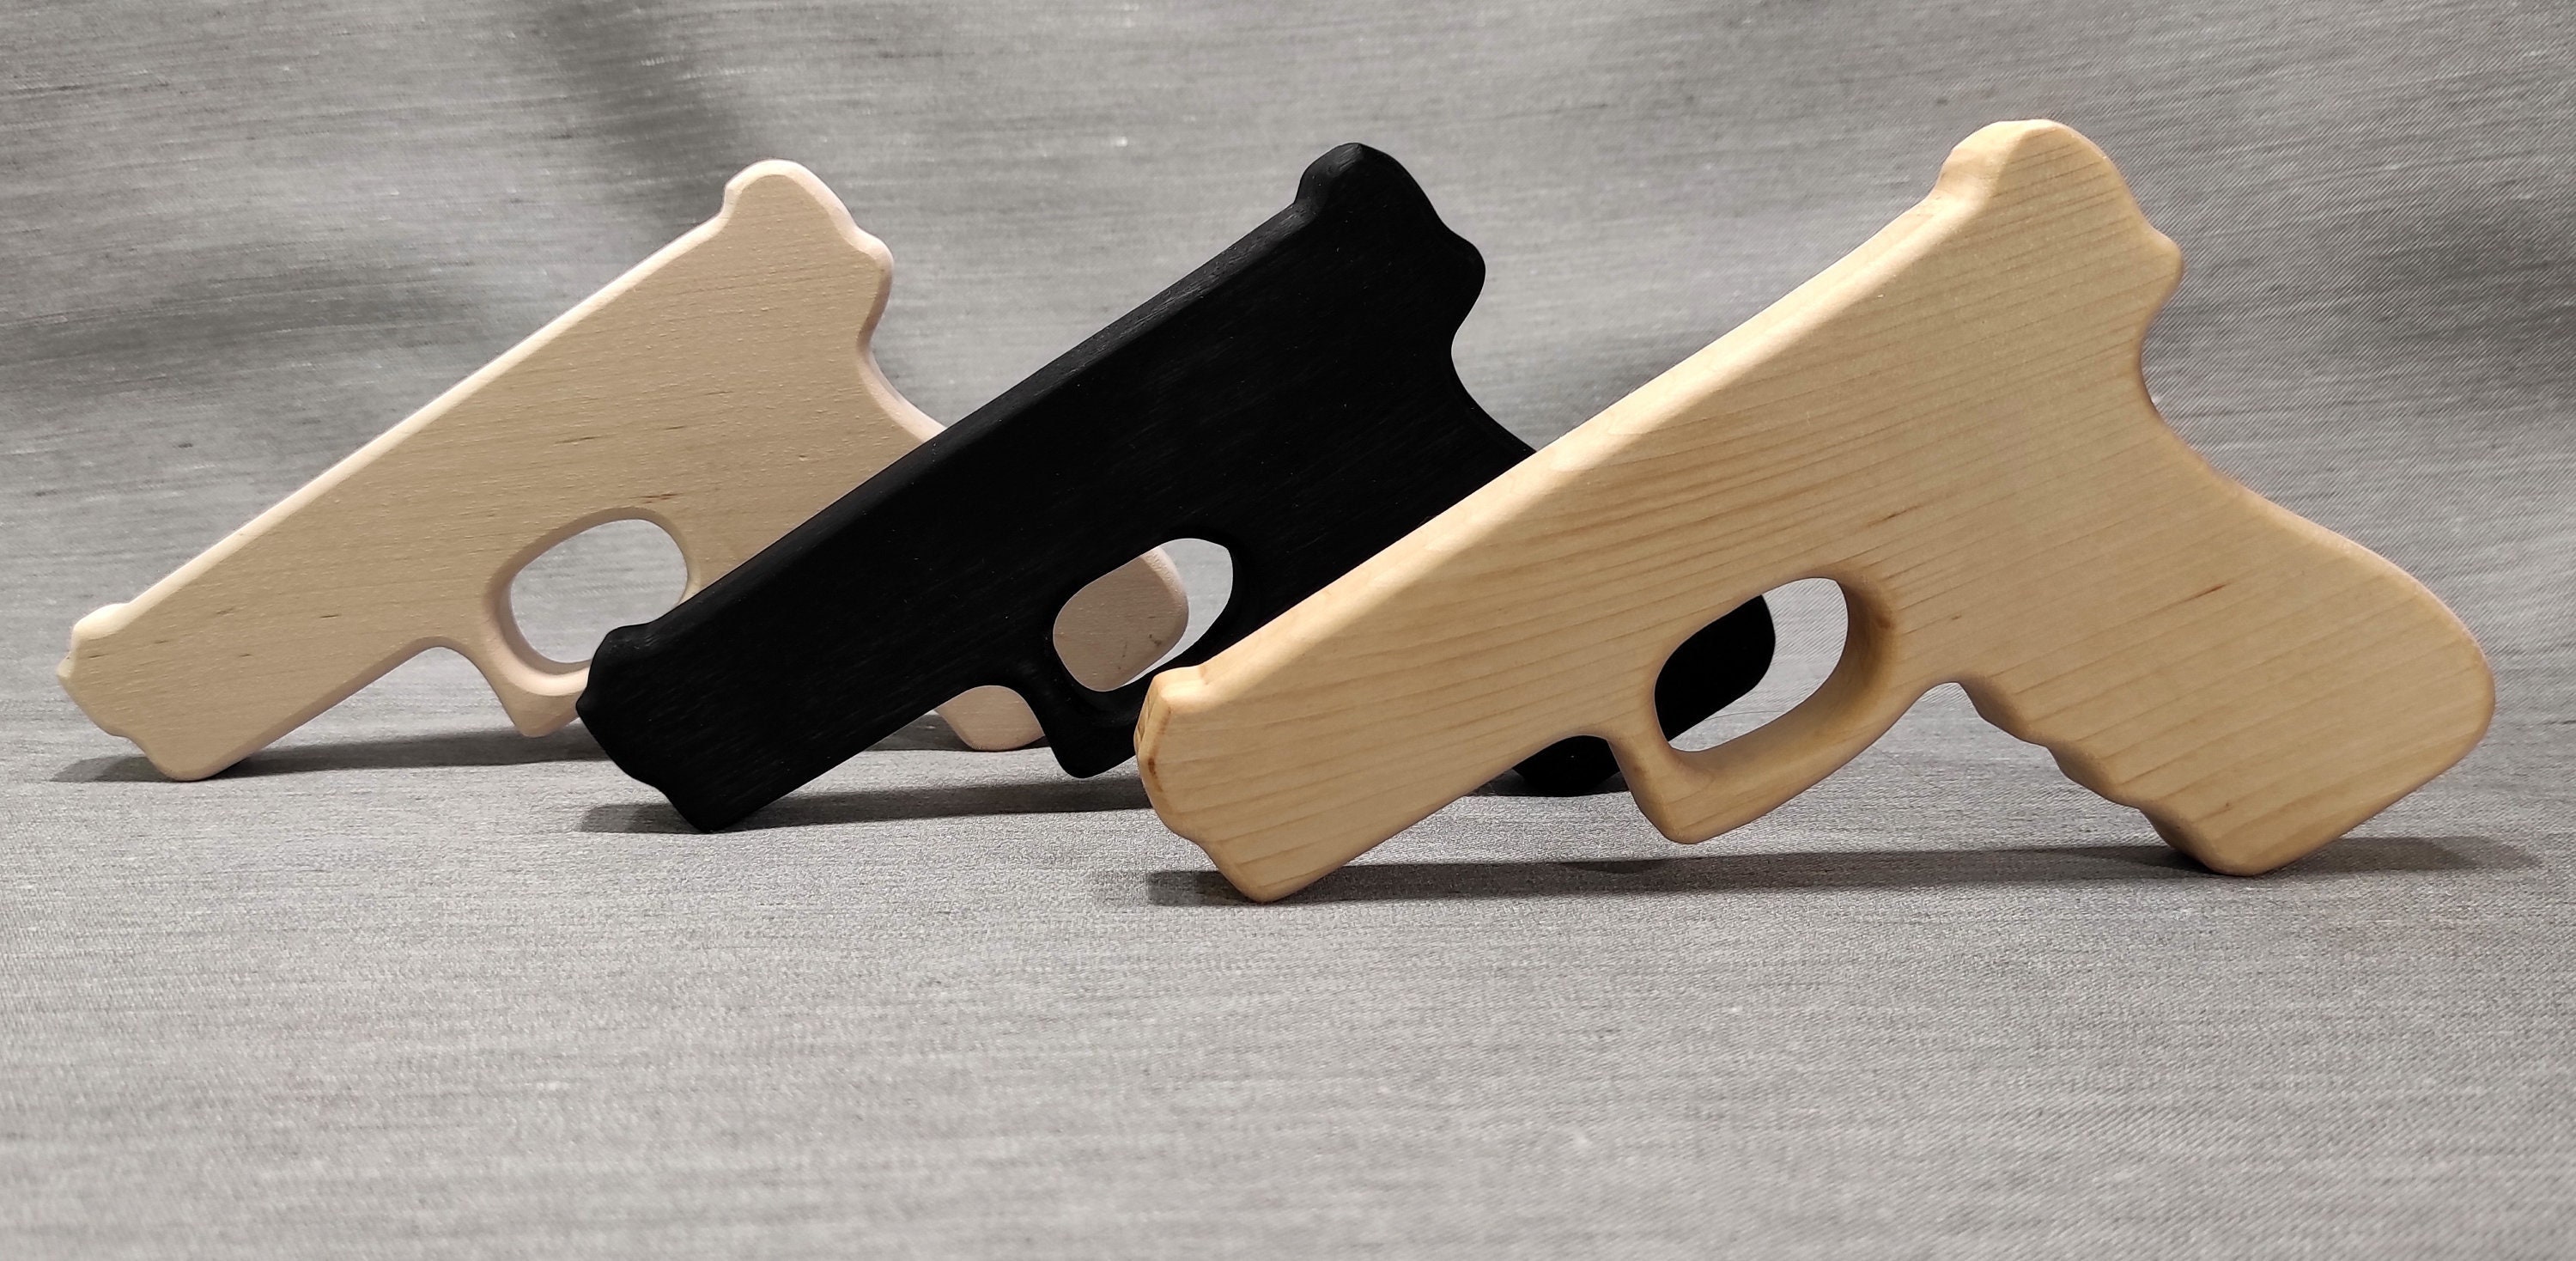 Voorzitter Concurreren Piket Houten pistool Glock 17 houten speelgoedpistool handgemaakt - Etsy Nederland